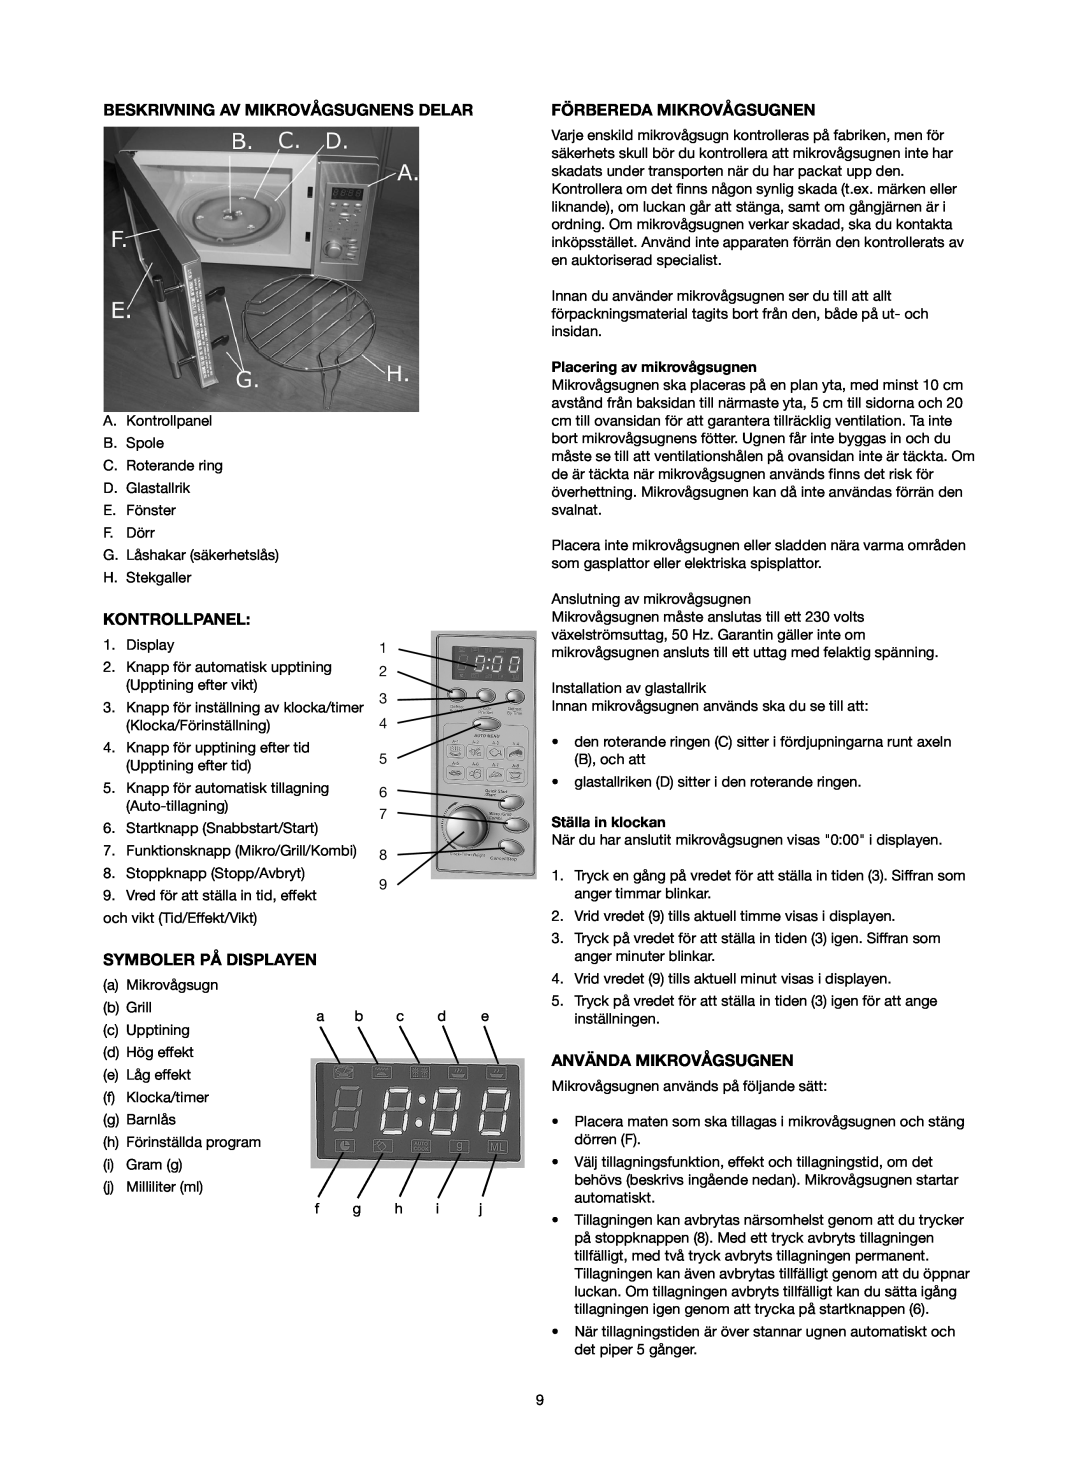 Melissa 753-089 manual Beskrivning Av Mikrovågsugnens Delar, Kontrollpanel, Symboler På Displayen, Förbereda Mikrovågsugnen 